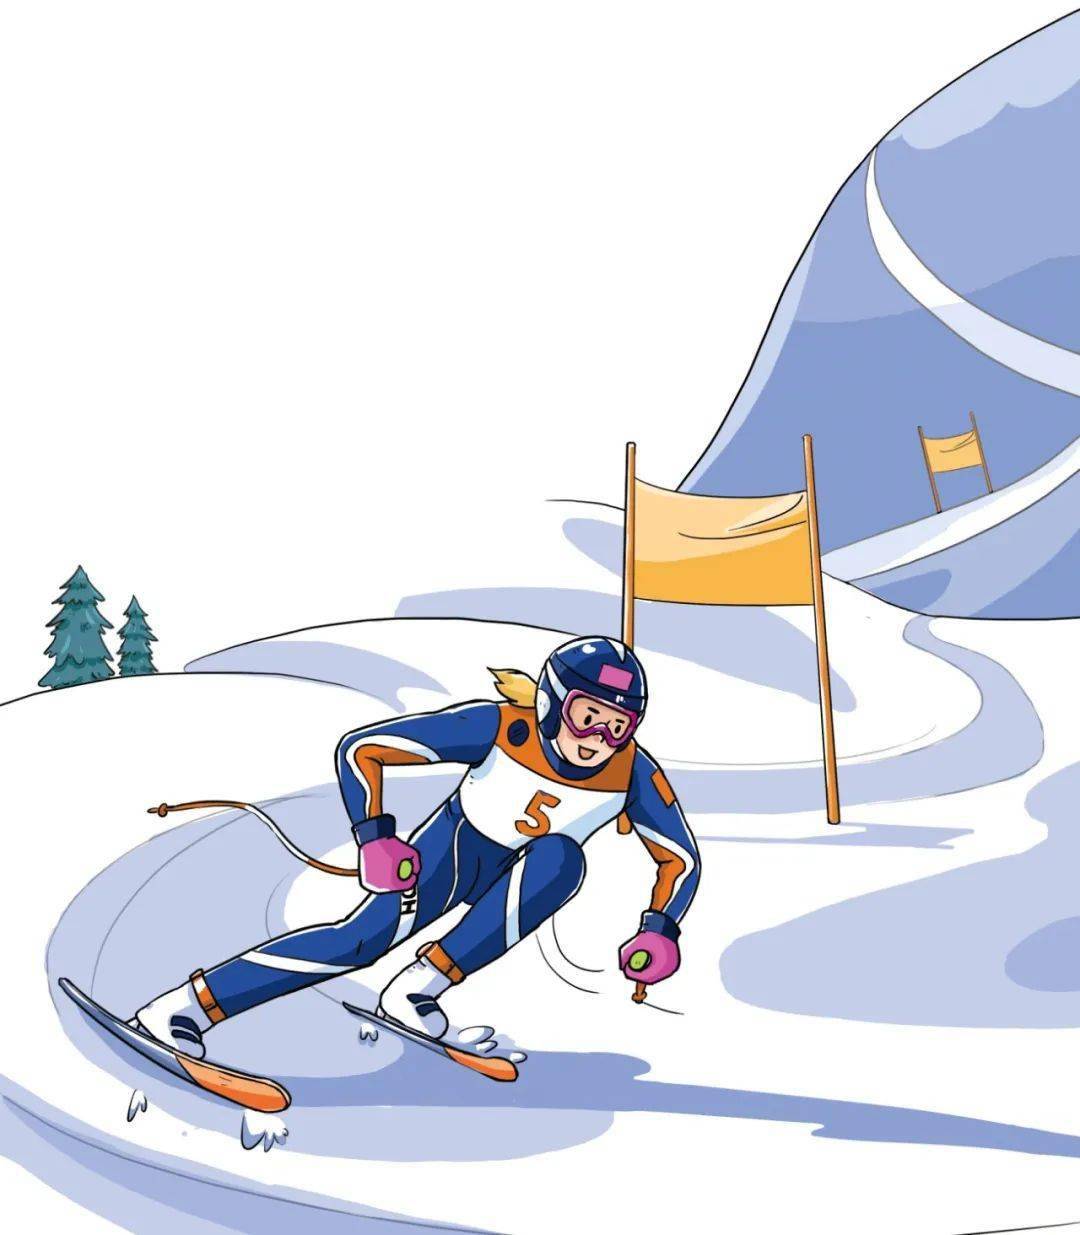 中国自1980年首次参加冬奥会至今,每届冬奥会都有高山滑雪项目资格,但